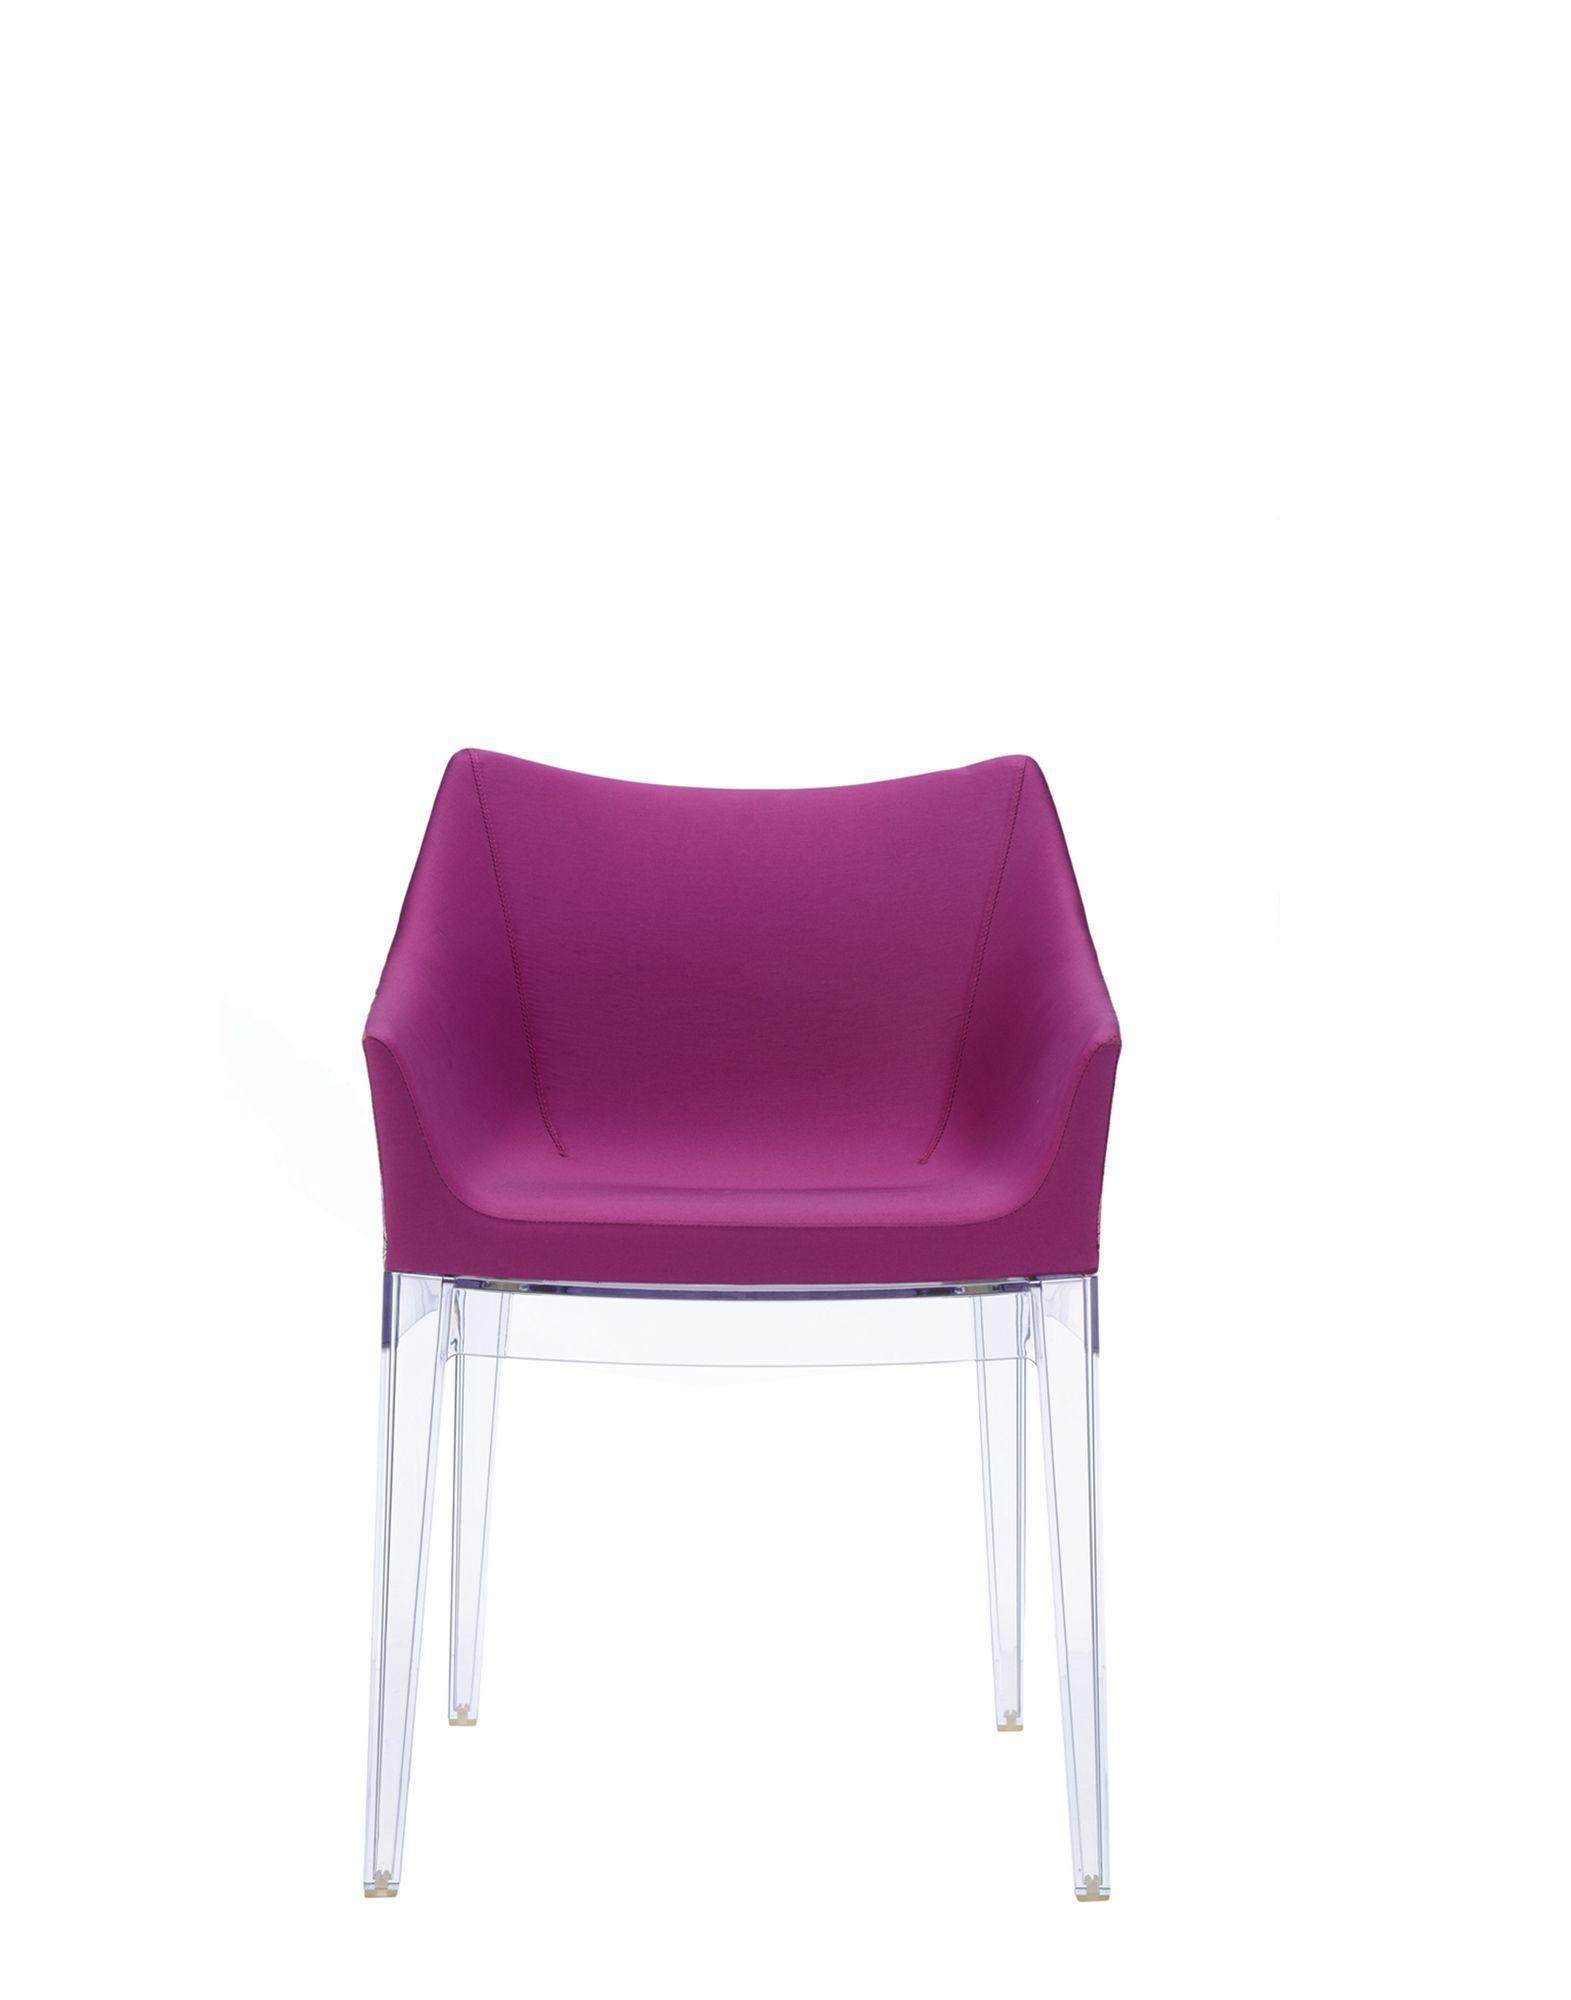 Grâce à sa palette de couleurs neutres, cette chaise est le meuble idéal à insérer dans les intérieurs résidentiels sophistiqués ou les projets contractuels les plus raffinés.
   